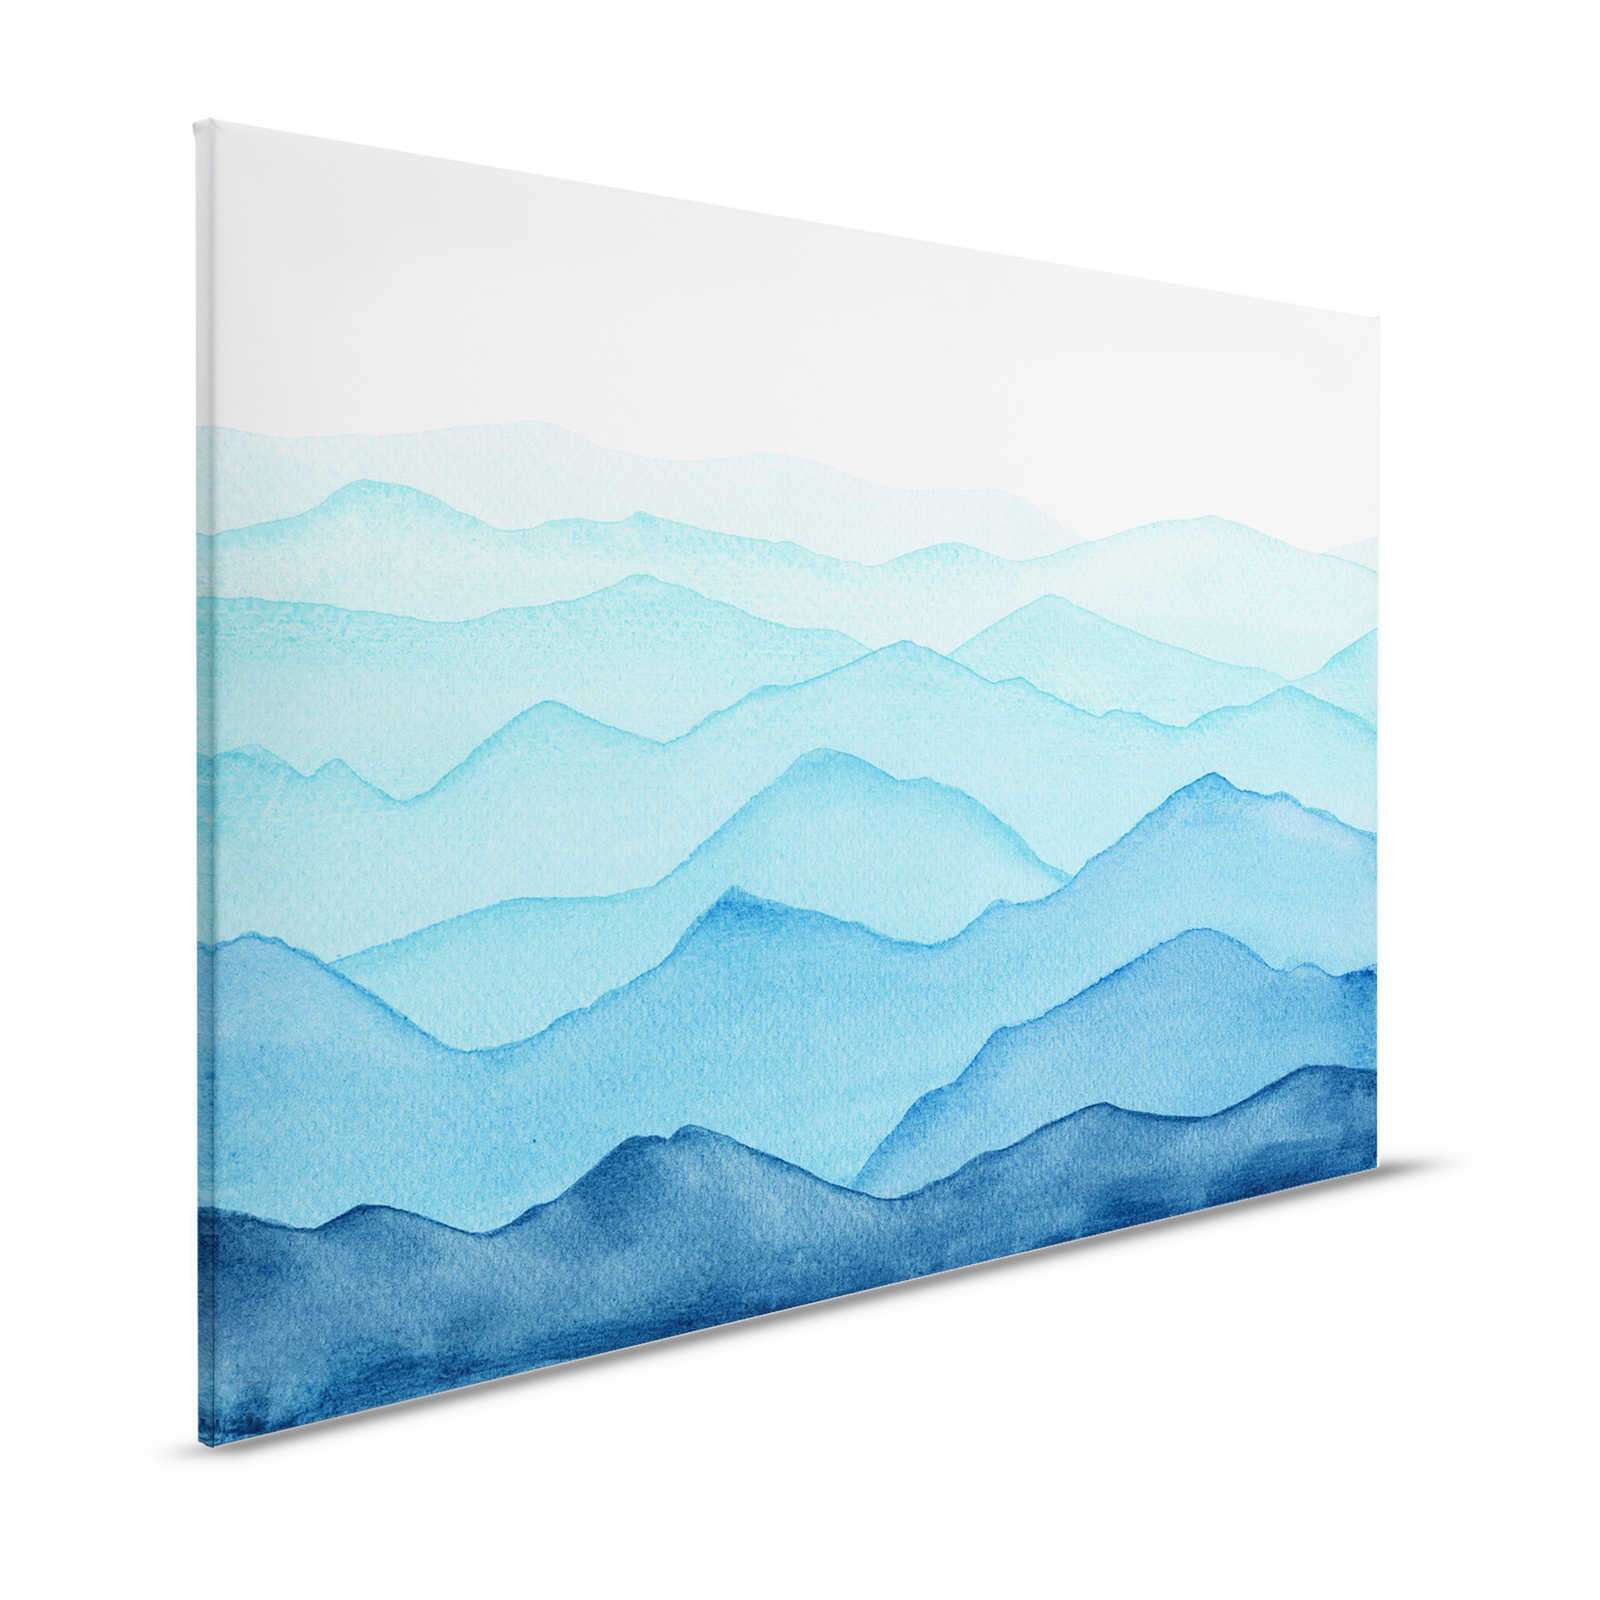 Toile Mer avec vagues à l'aquarelle - 120 cm x 80 cm
